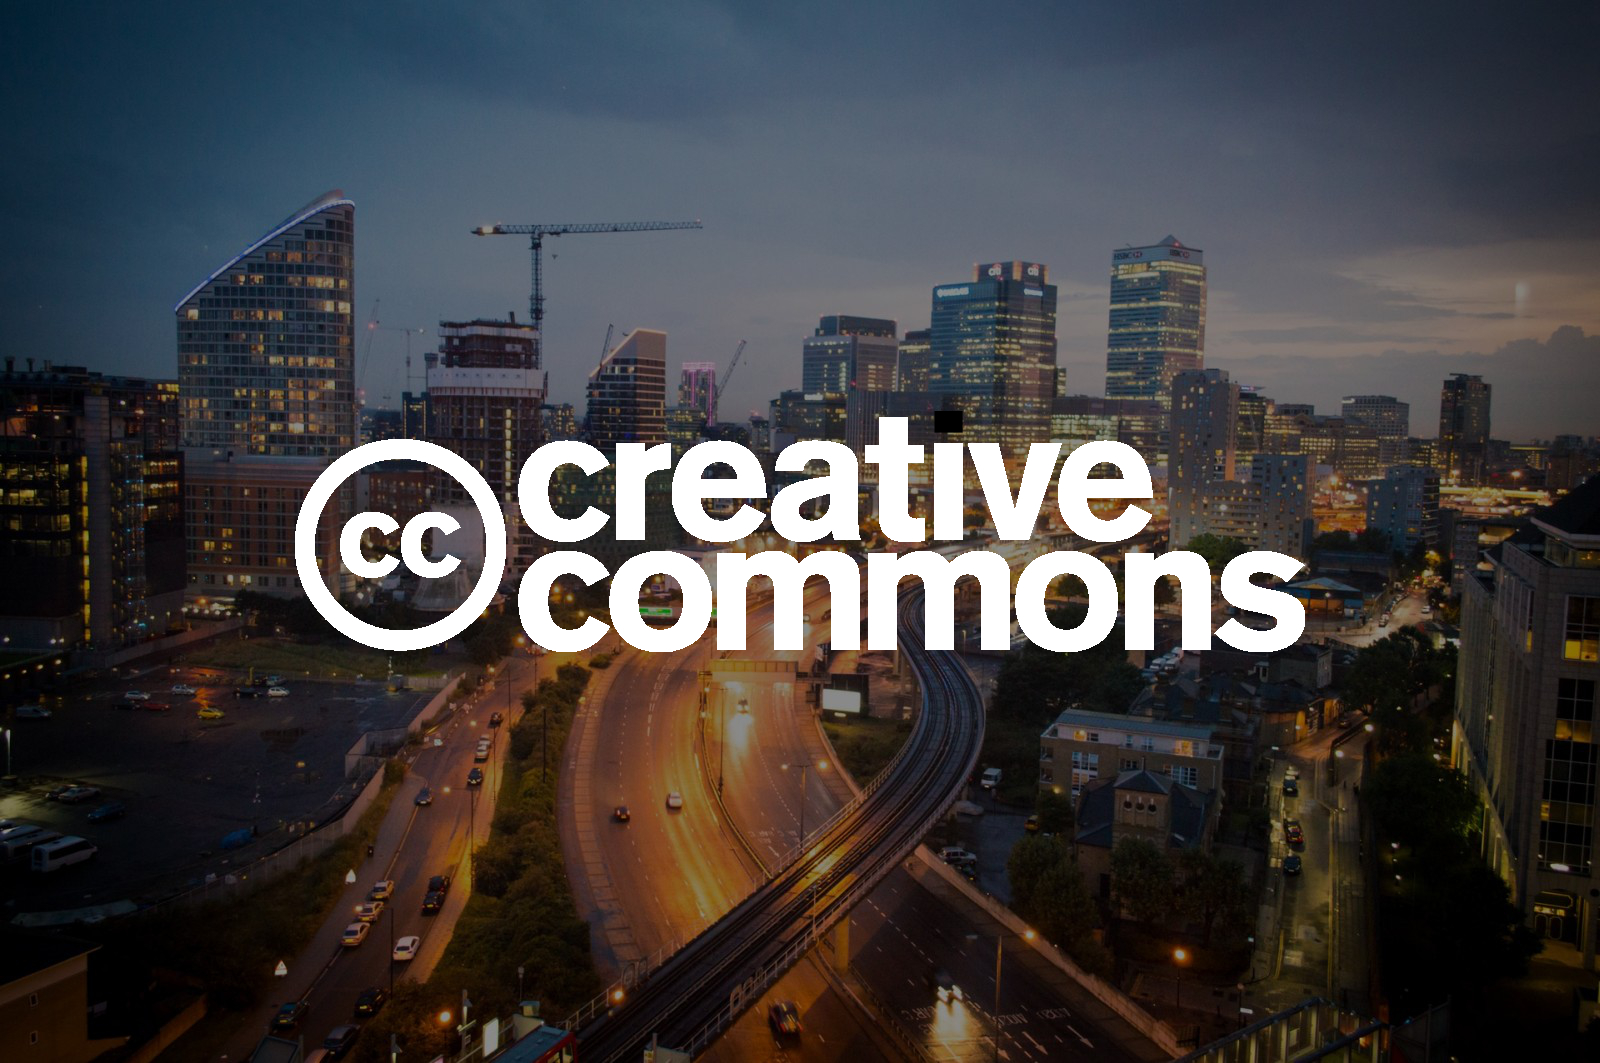 Zdjęcia na licencji Creative Commons – jak z nich korzystać nie naruszając prawa